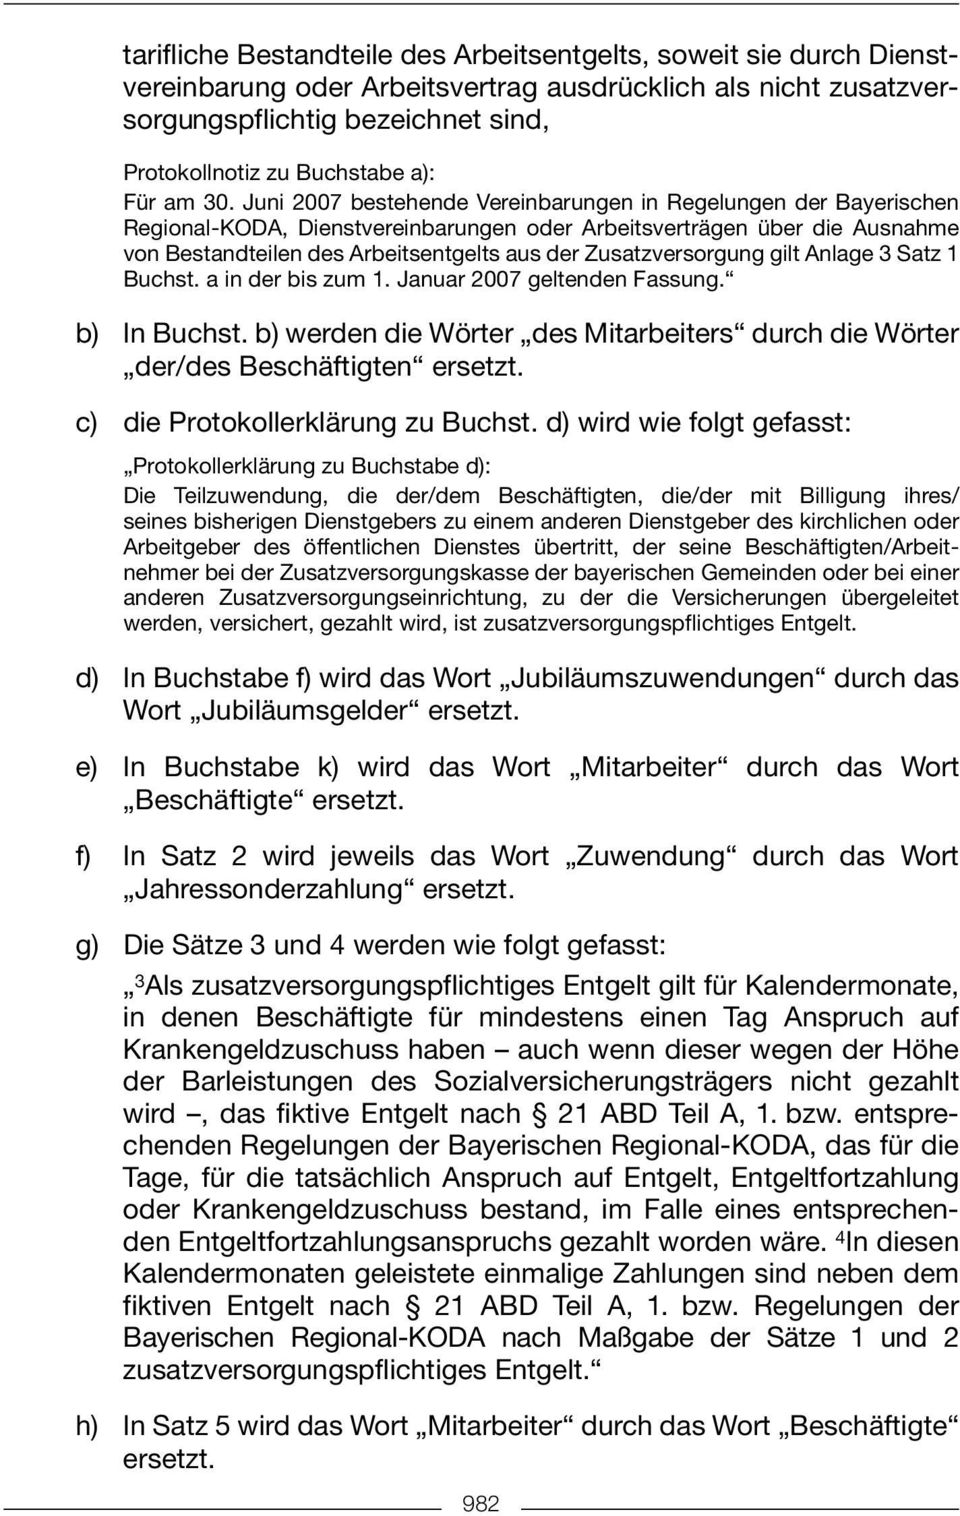 Juni 2007 bestehende Vereinbarungen in Regelungen der Bayerischen Regional-KODA, Dienstvereinbarungen oder Arbeitsverträgen über die Ausnahme von Bestandteilen des Arbeitsentgelts aus der